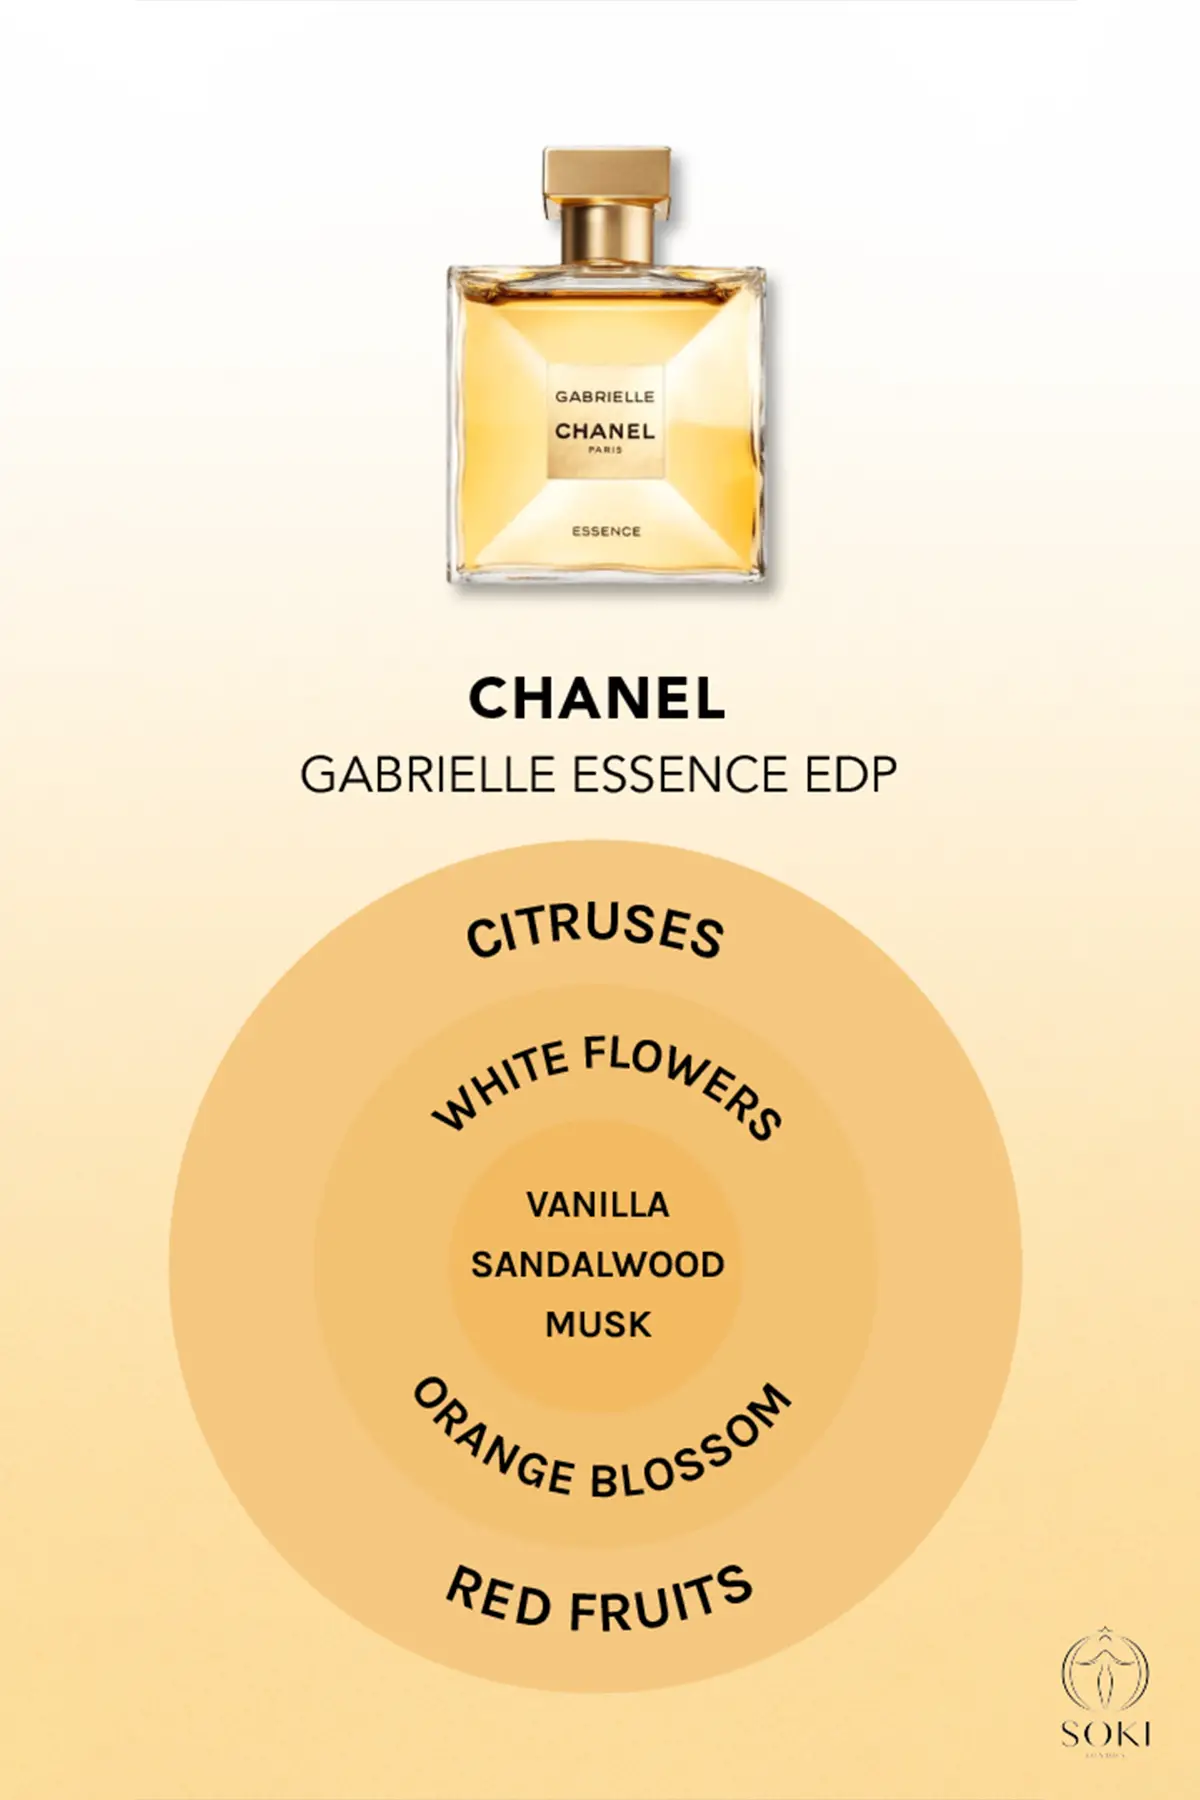 NEW* Chanel Fragrance  Gabrielle Chanel Eau de Parfum: Review